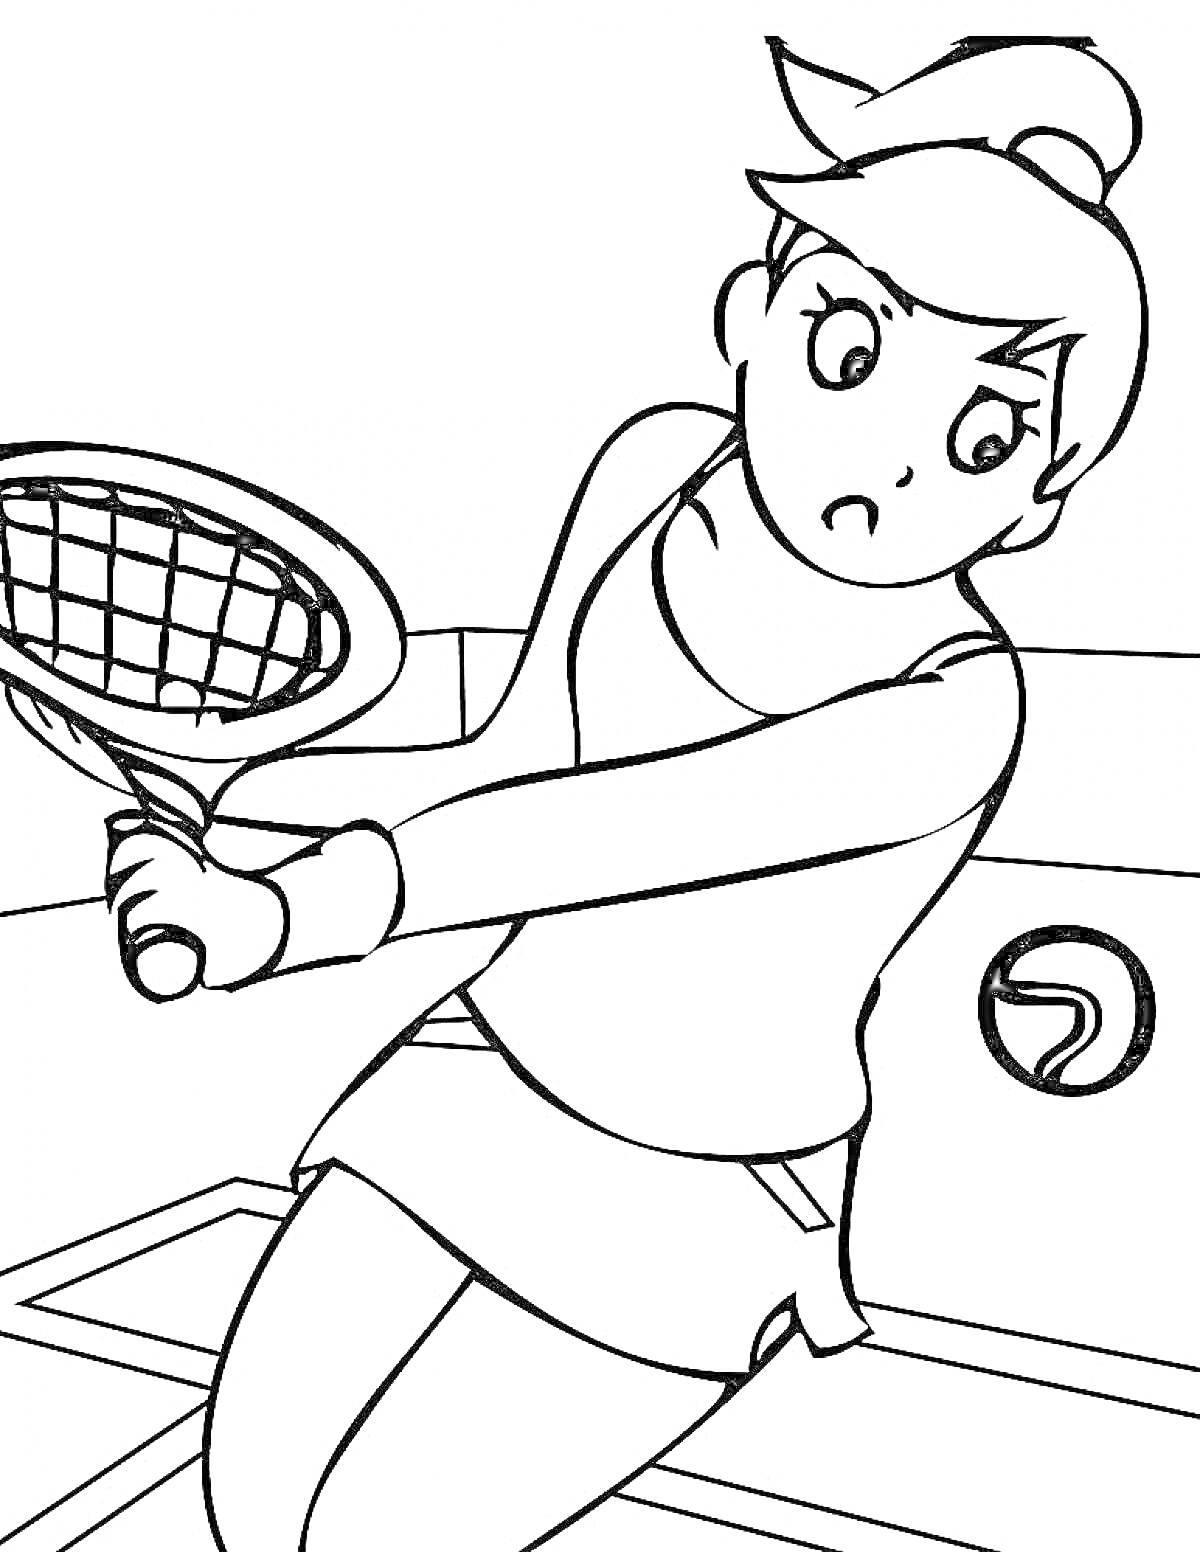 РаскраскаДевушка в теннисной одежде с ракеткой и теннисным мячом на корте